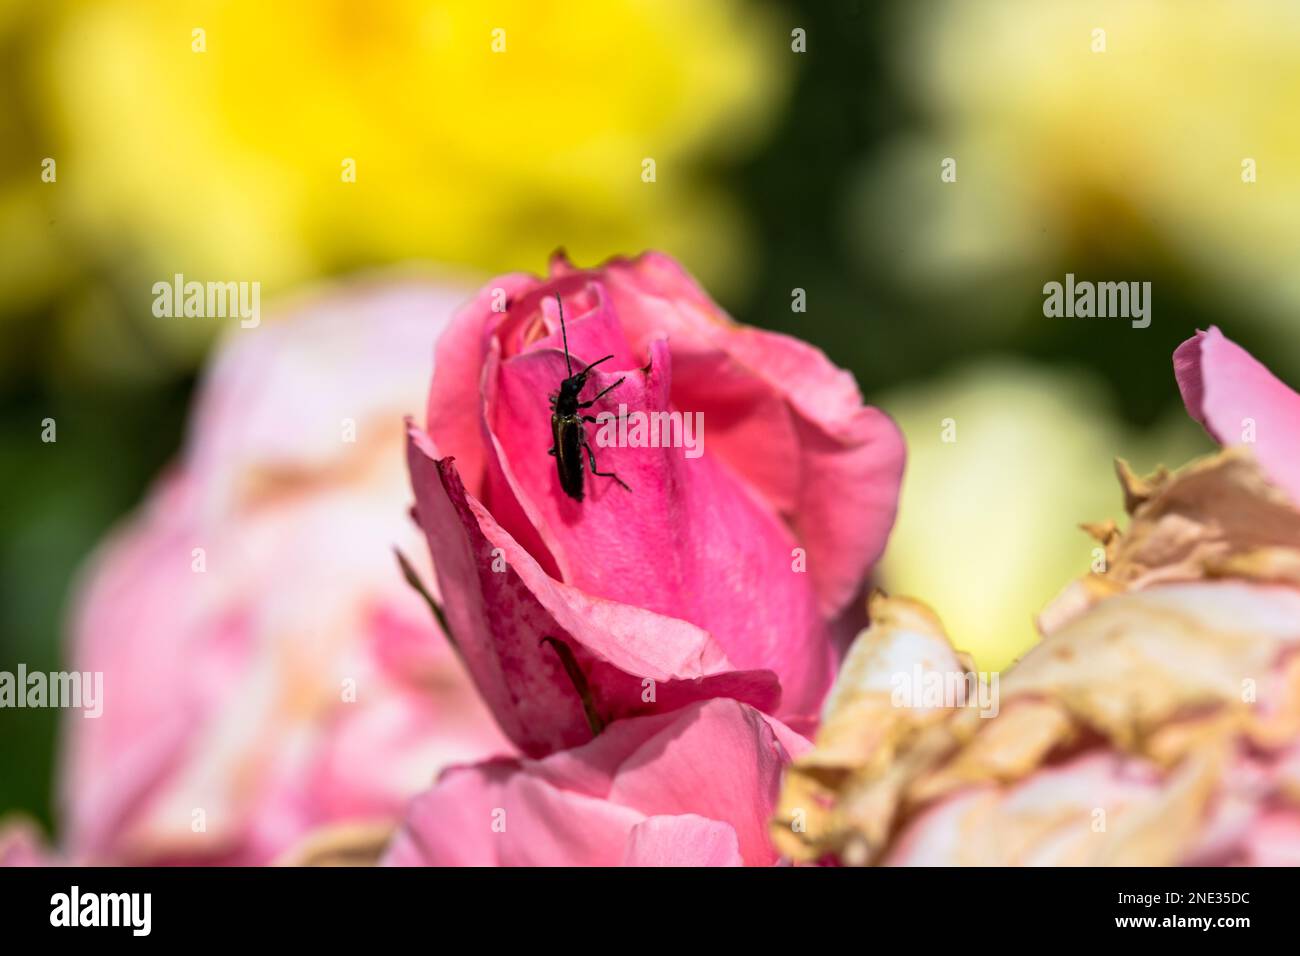 Ein Käfer auf einer Blume in zartem Rosa - Uno scarabeo su un morbido fiore rosa Foto Stock